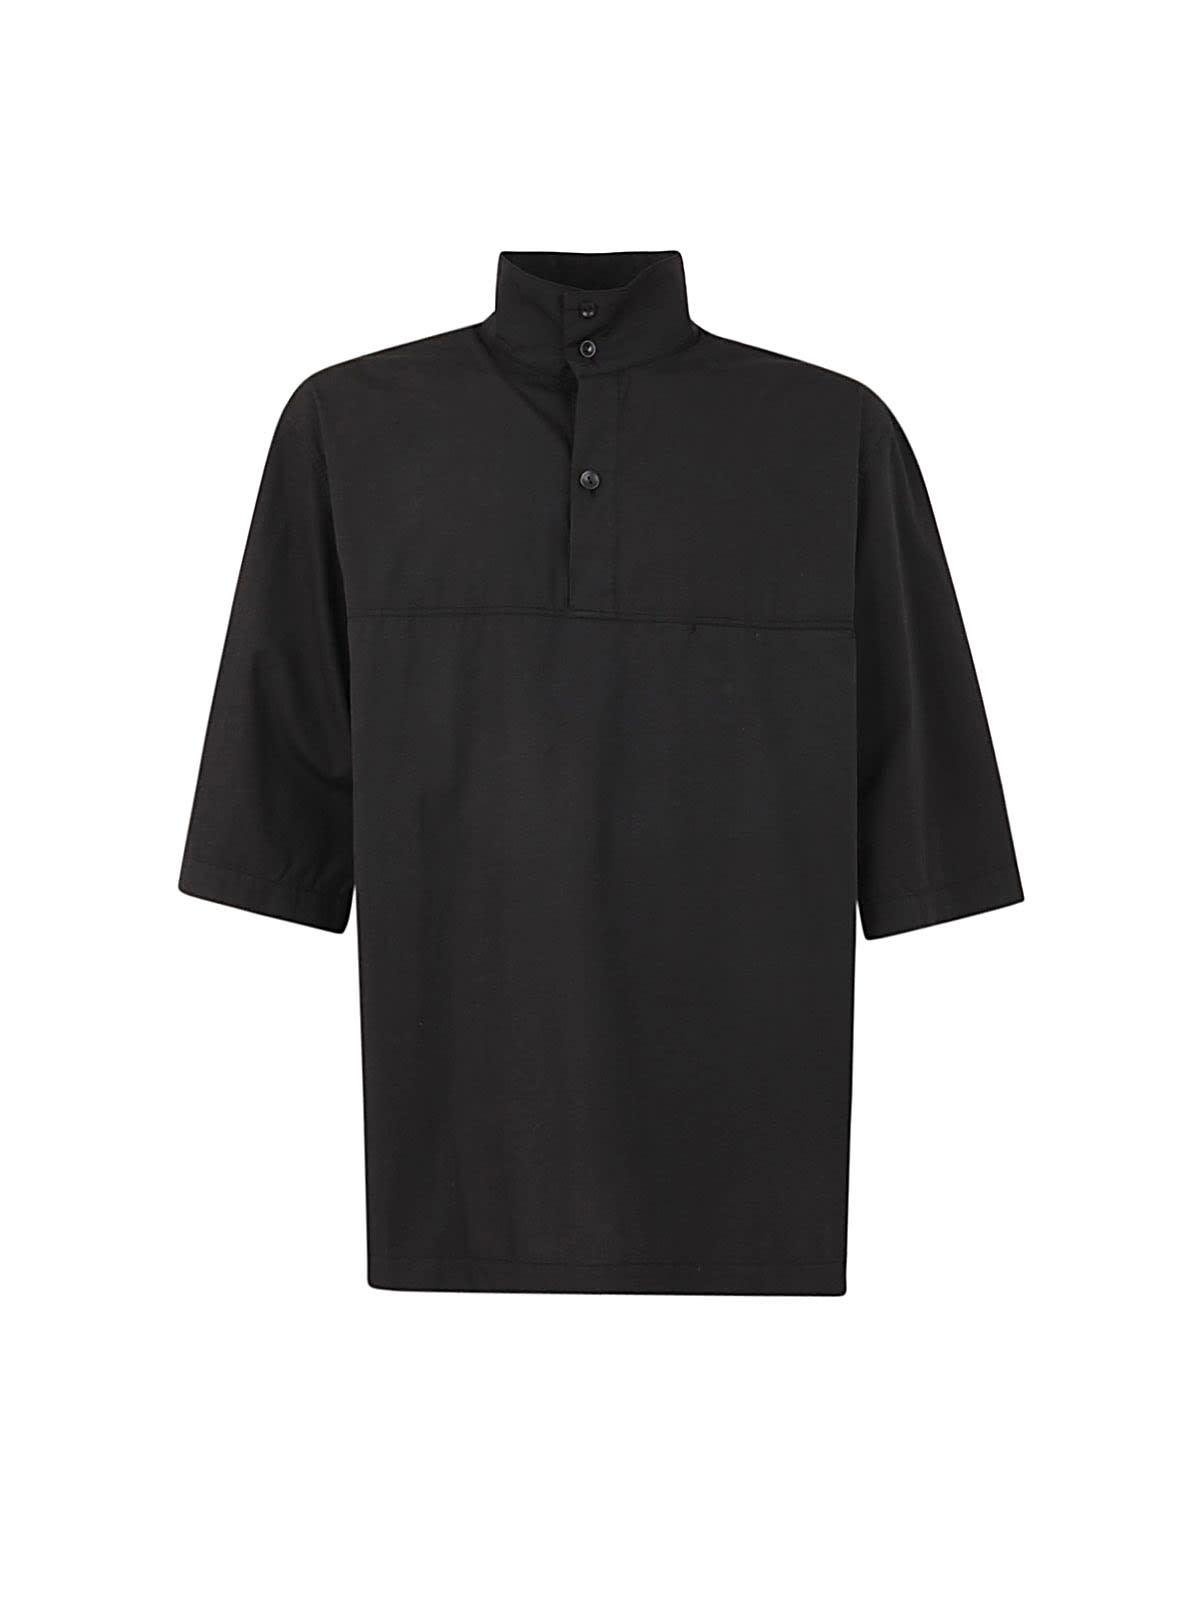 Lemaire Vareuse Shirt in Black for Men | Lyst